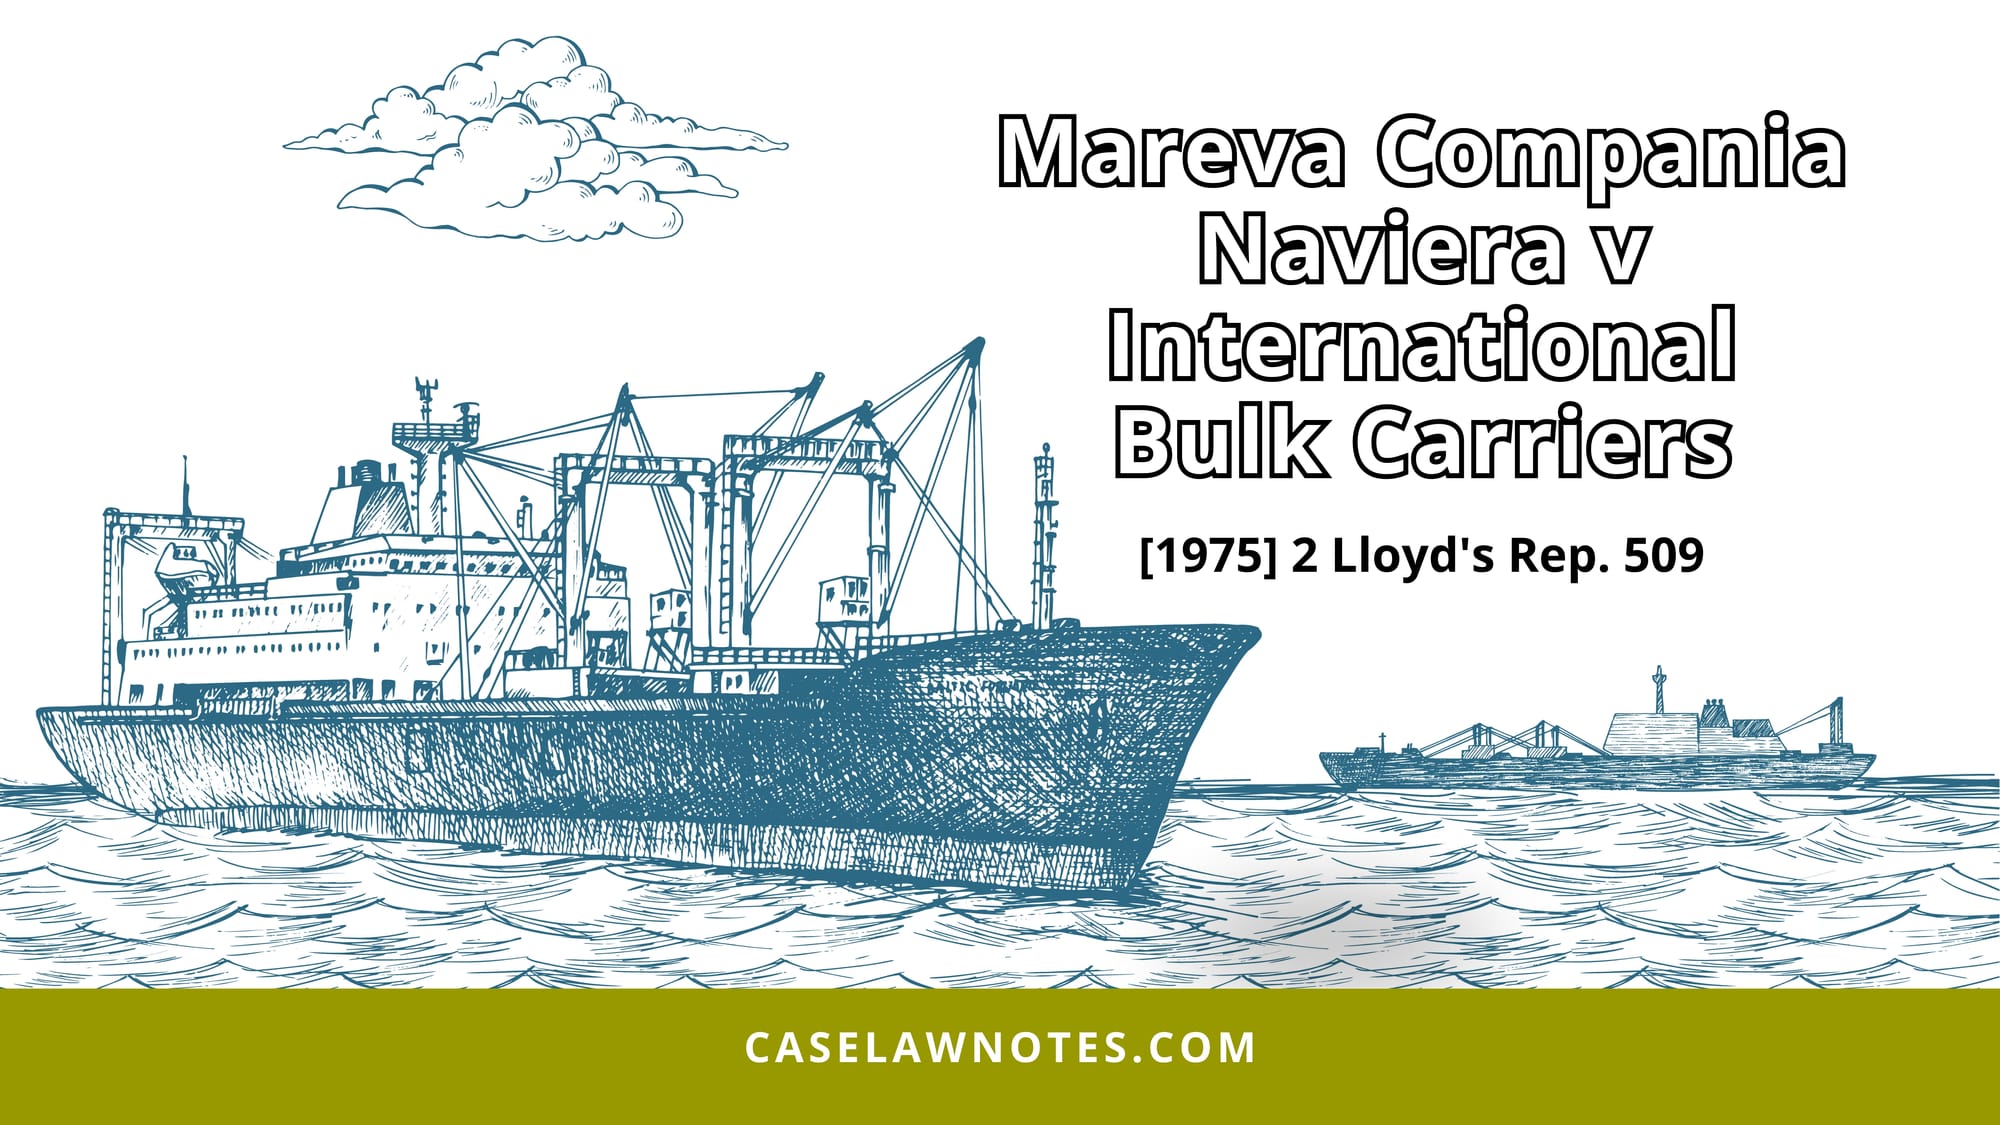 Mareva Compania Naviera v International Bulk Carriers - case summary - charterparty - mareva injunction